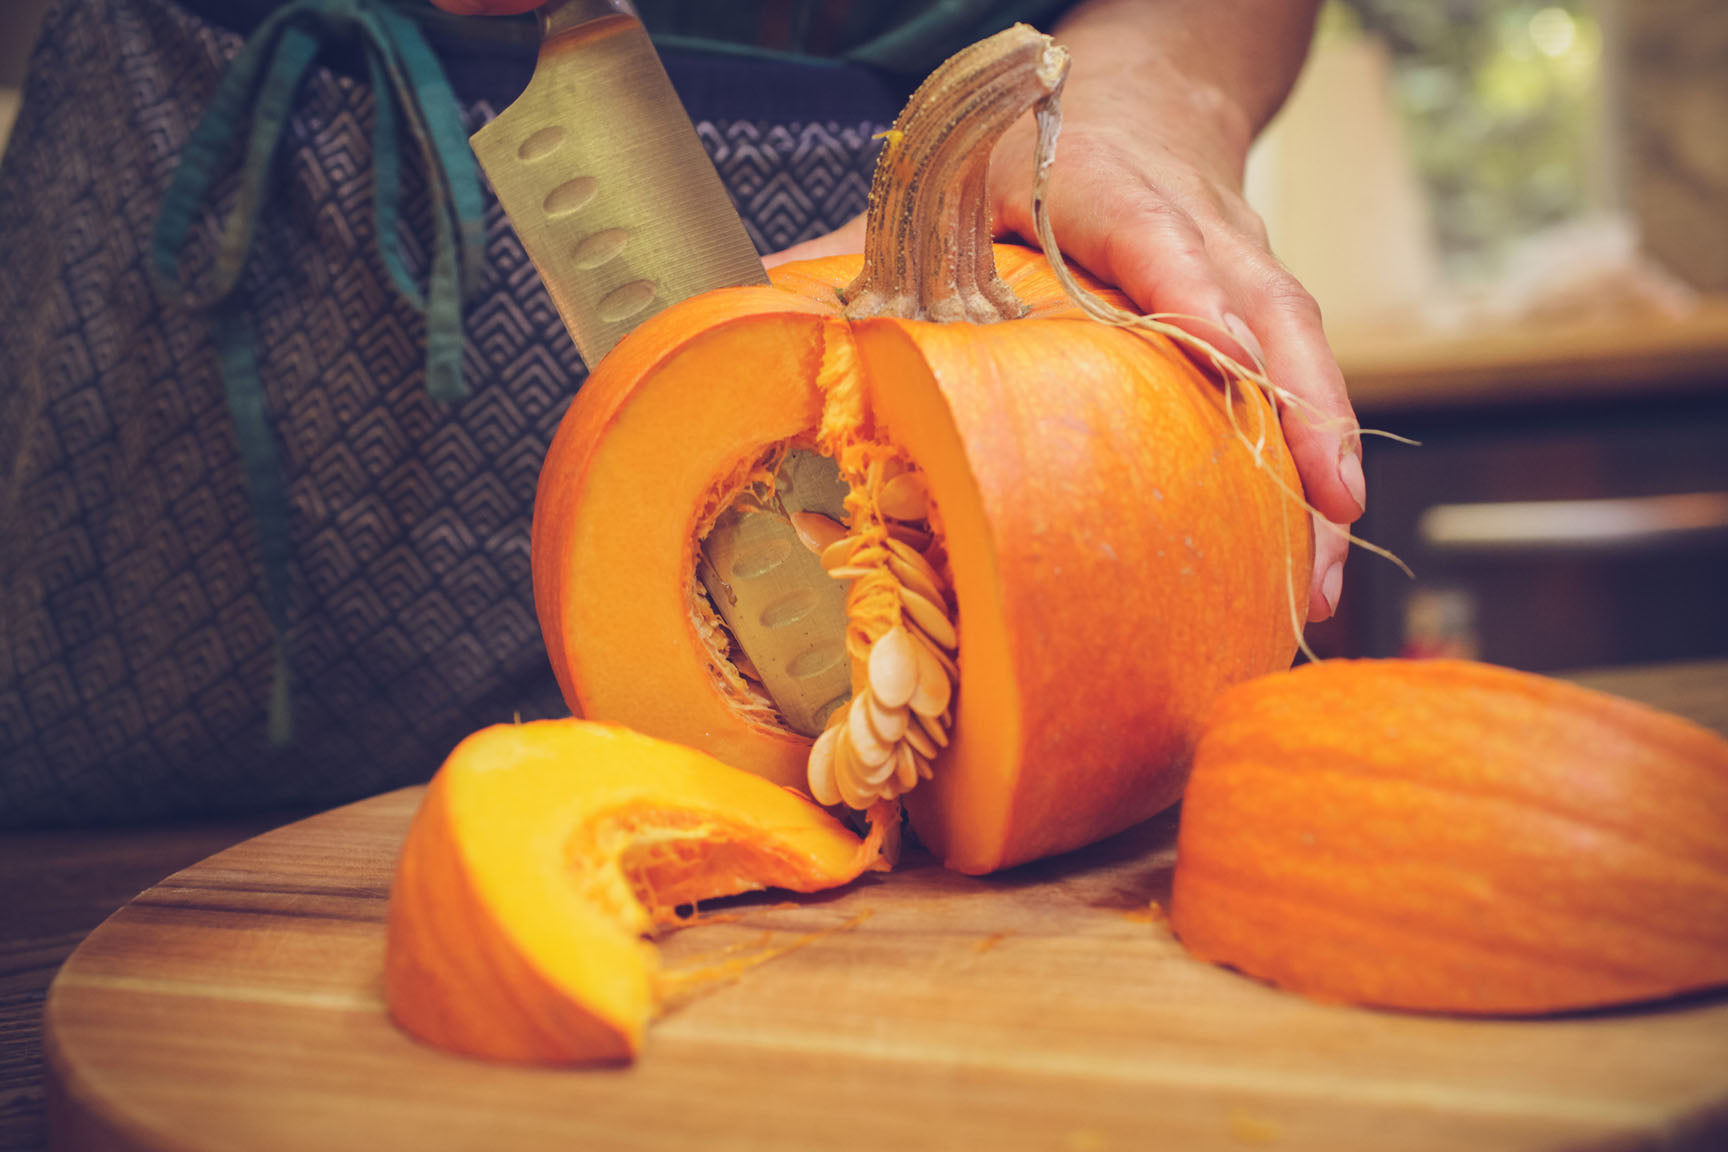 scoop seeds form pumpkin